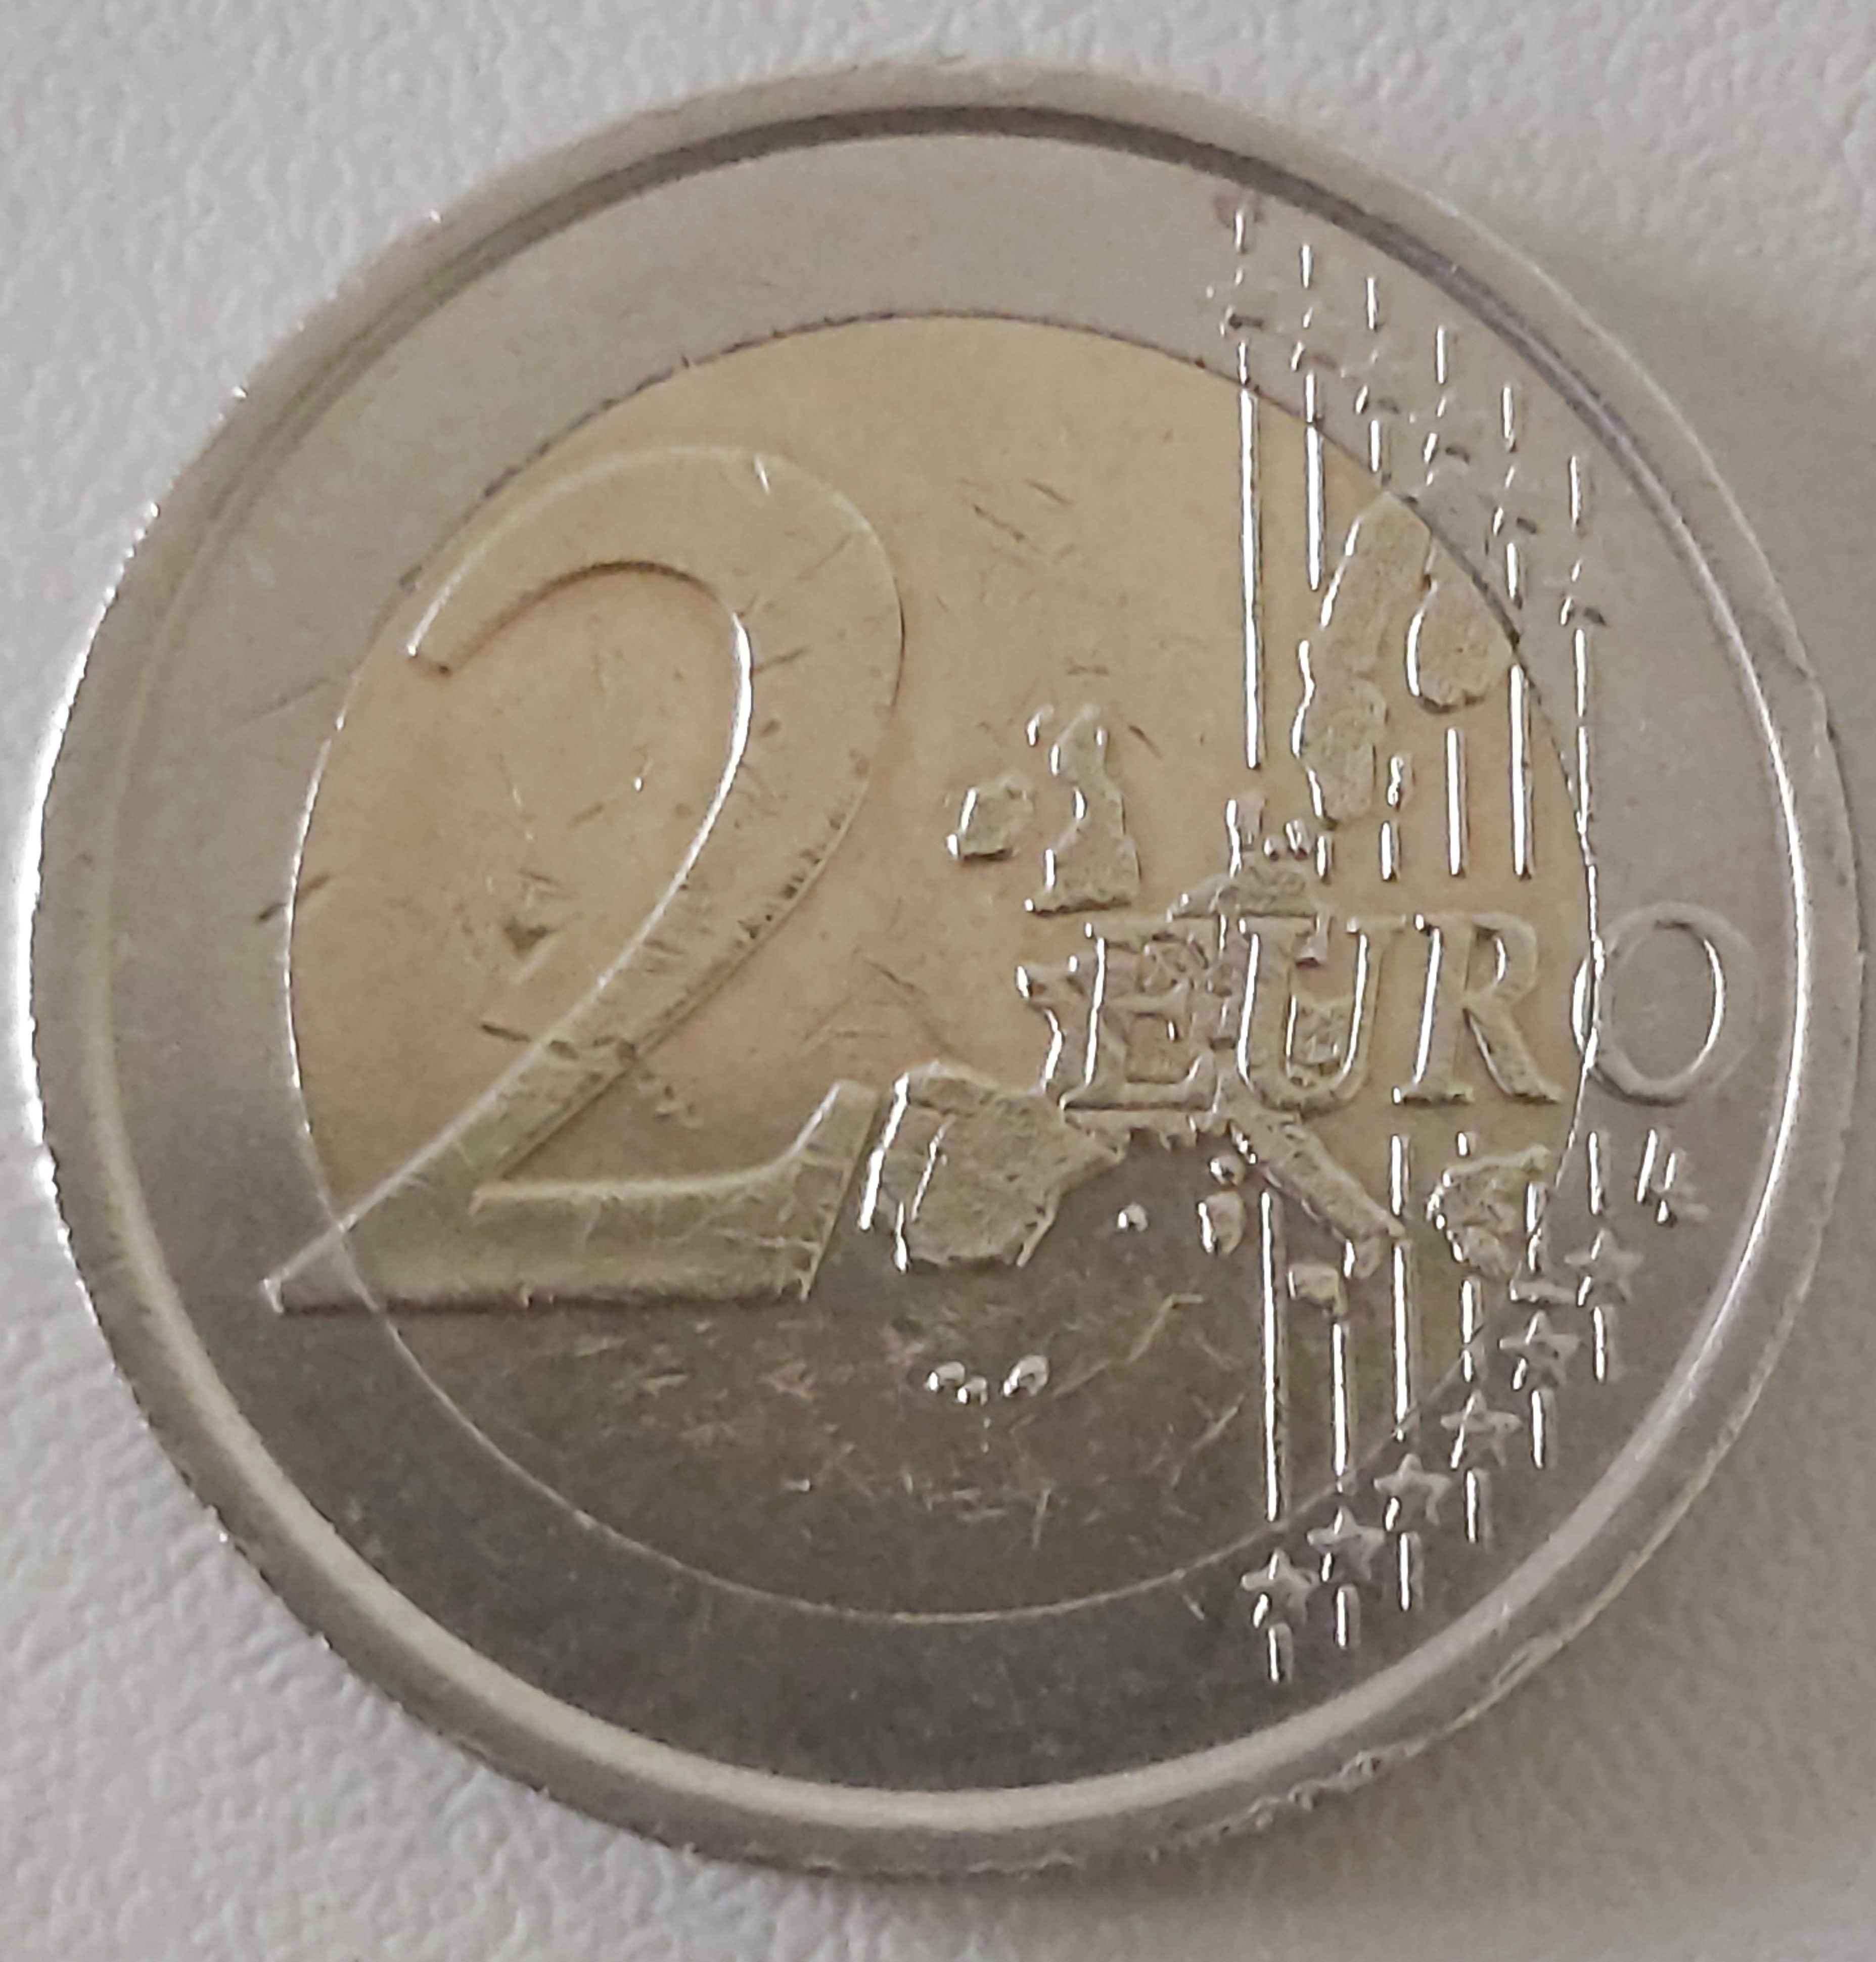 2 Euros de 2006, de Itália, XX Jogos Olímpicos Inverno, Torino 2006